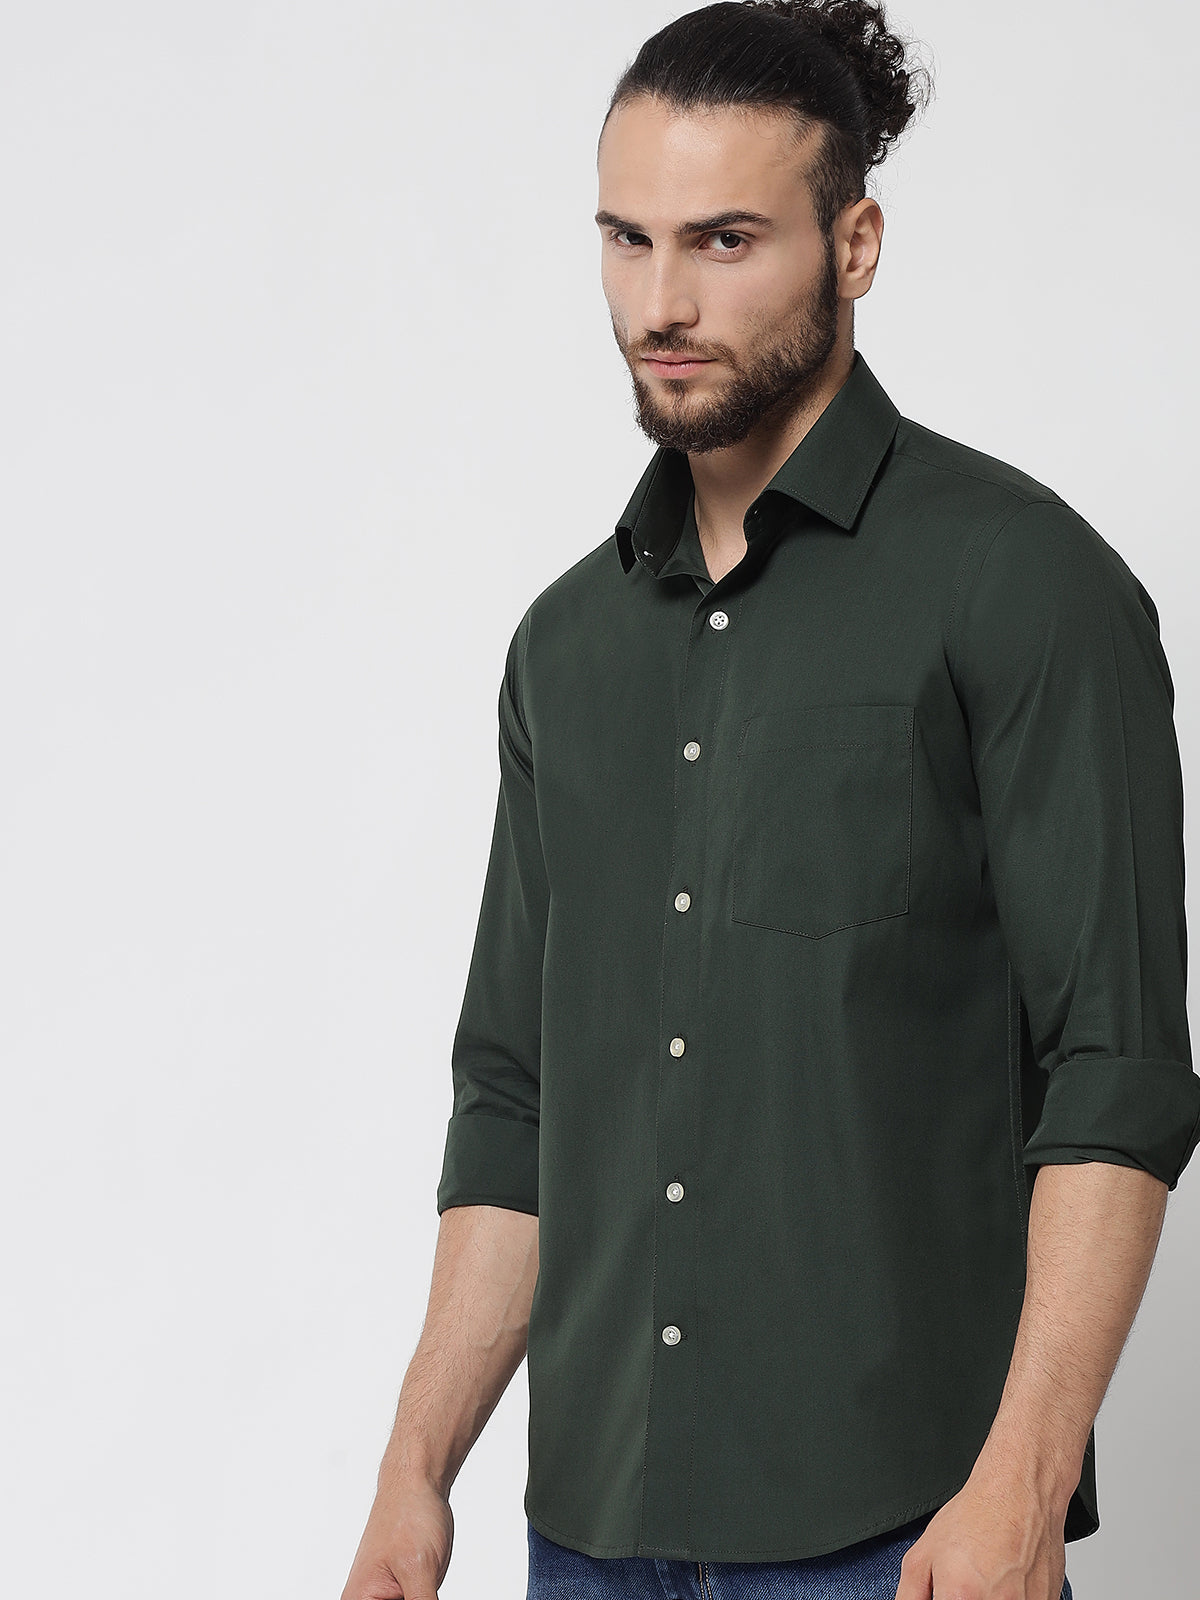 Bottle Green Colour Cotton Shirt For Men – Prime Porter